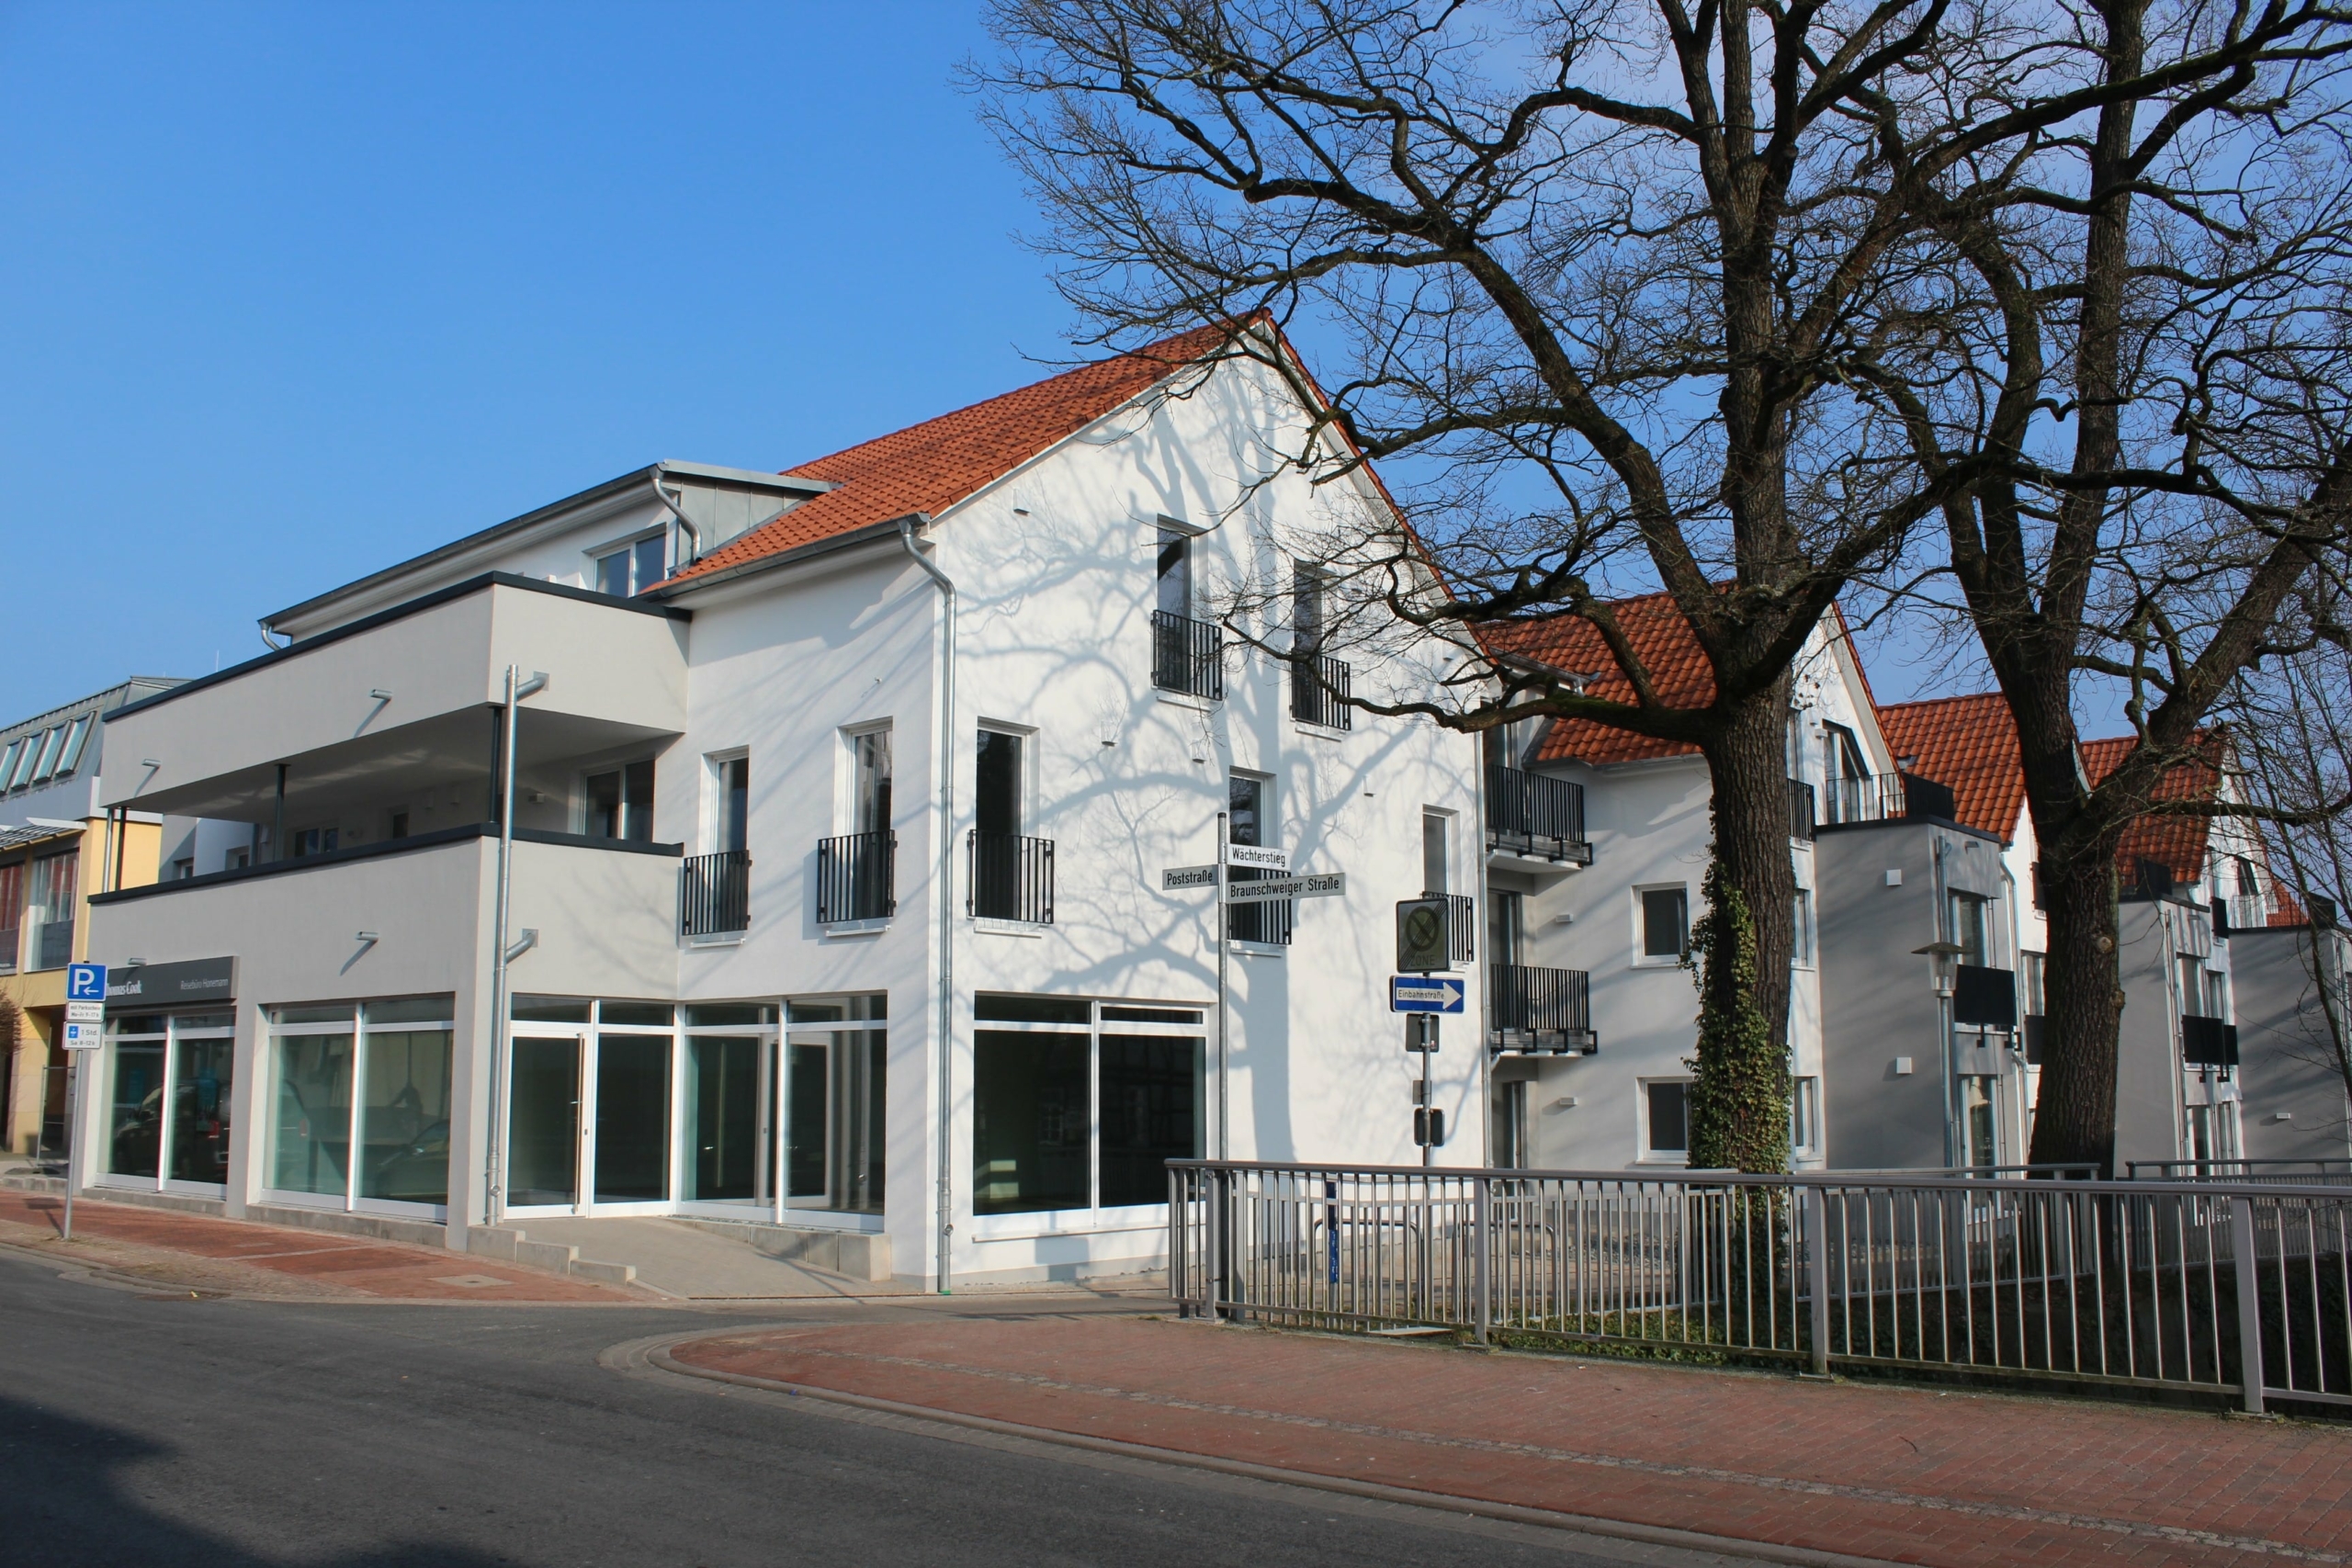 Vermietung: Moderne Ladenfläche im Zentrum von Burgdorf, 31303 Burgdorf, Ladenlokal